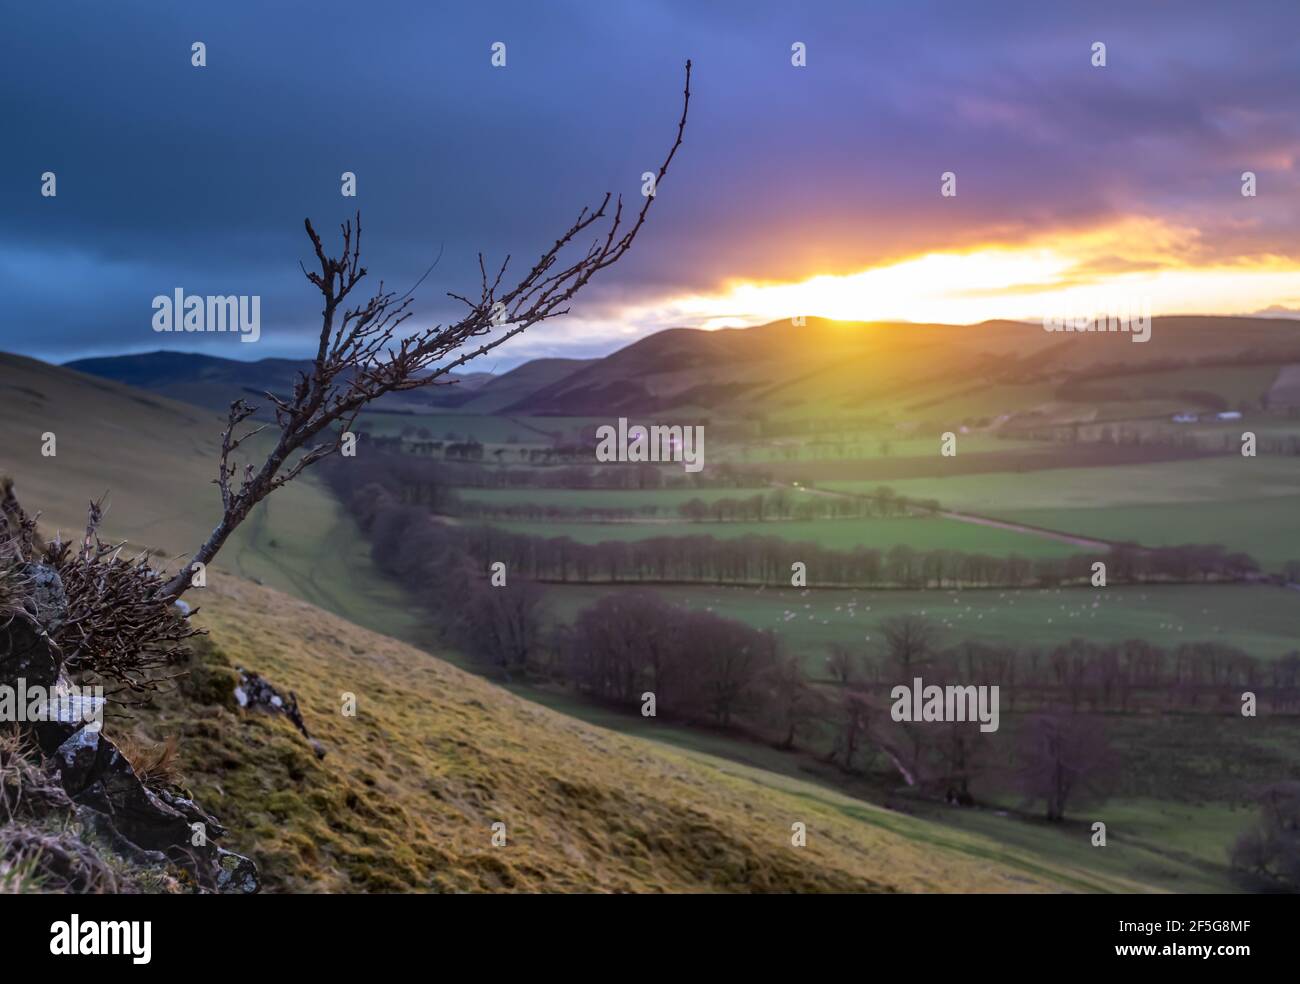 Un faisceau de lumière d'UN coucher de soleil d'hiver illuminant le paysage doux d'une vallée agricole dans les frontières écossaises, avec foyer doux atmosphérique Banque D'Images